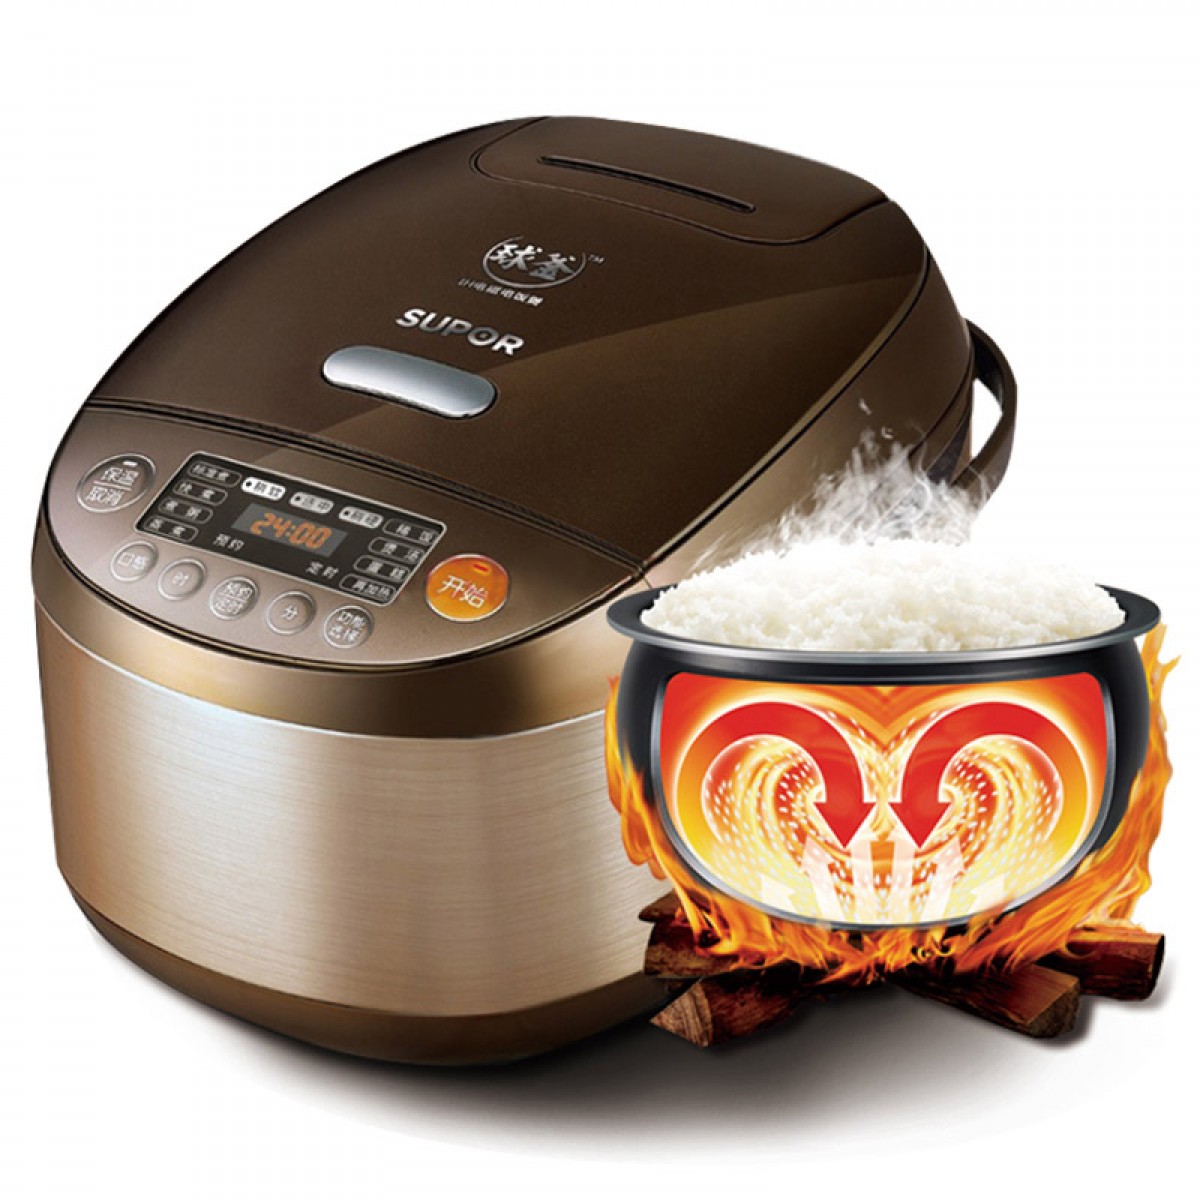 SUPOR / SUPOR cfxb40hc807-120 home intelligent IH spherical kettle rice cooker